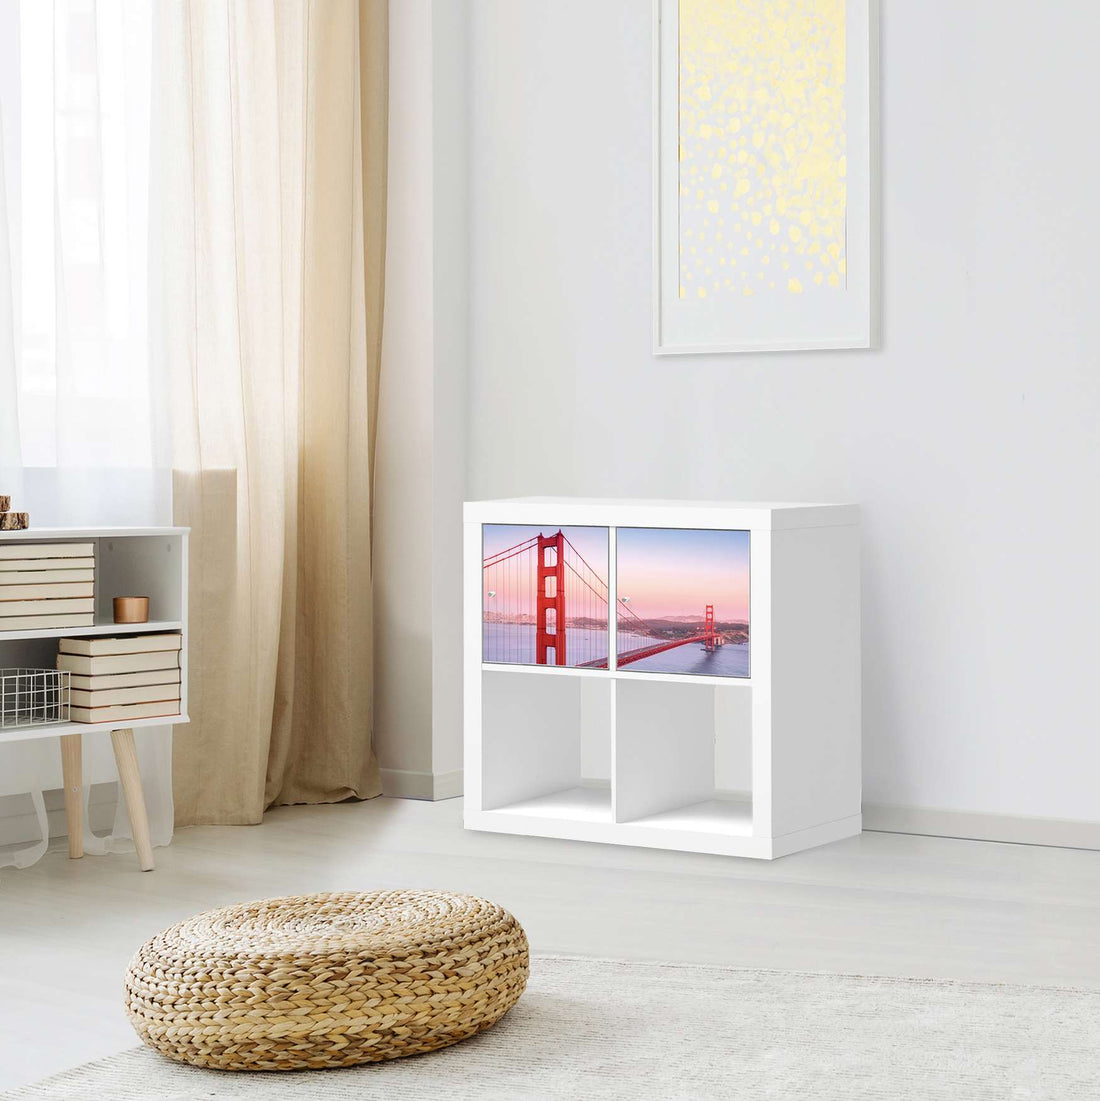 Möbel Klebefolie Golden Gate - IKEA Expedit Regal 2 Türen Quer - Wohnzimmer